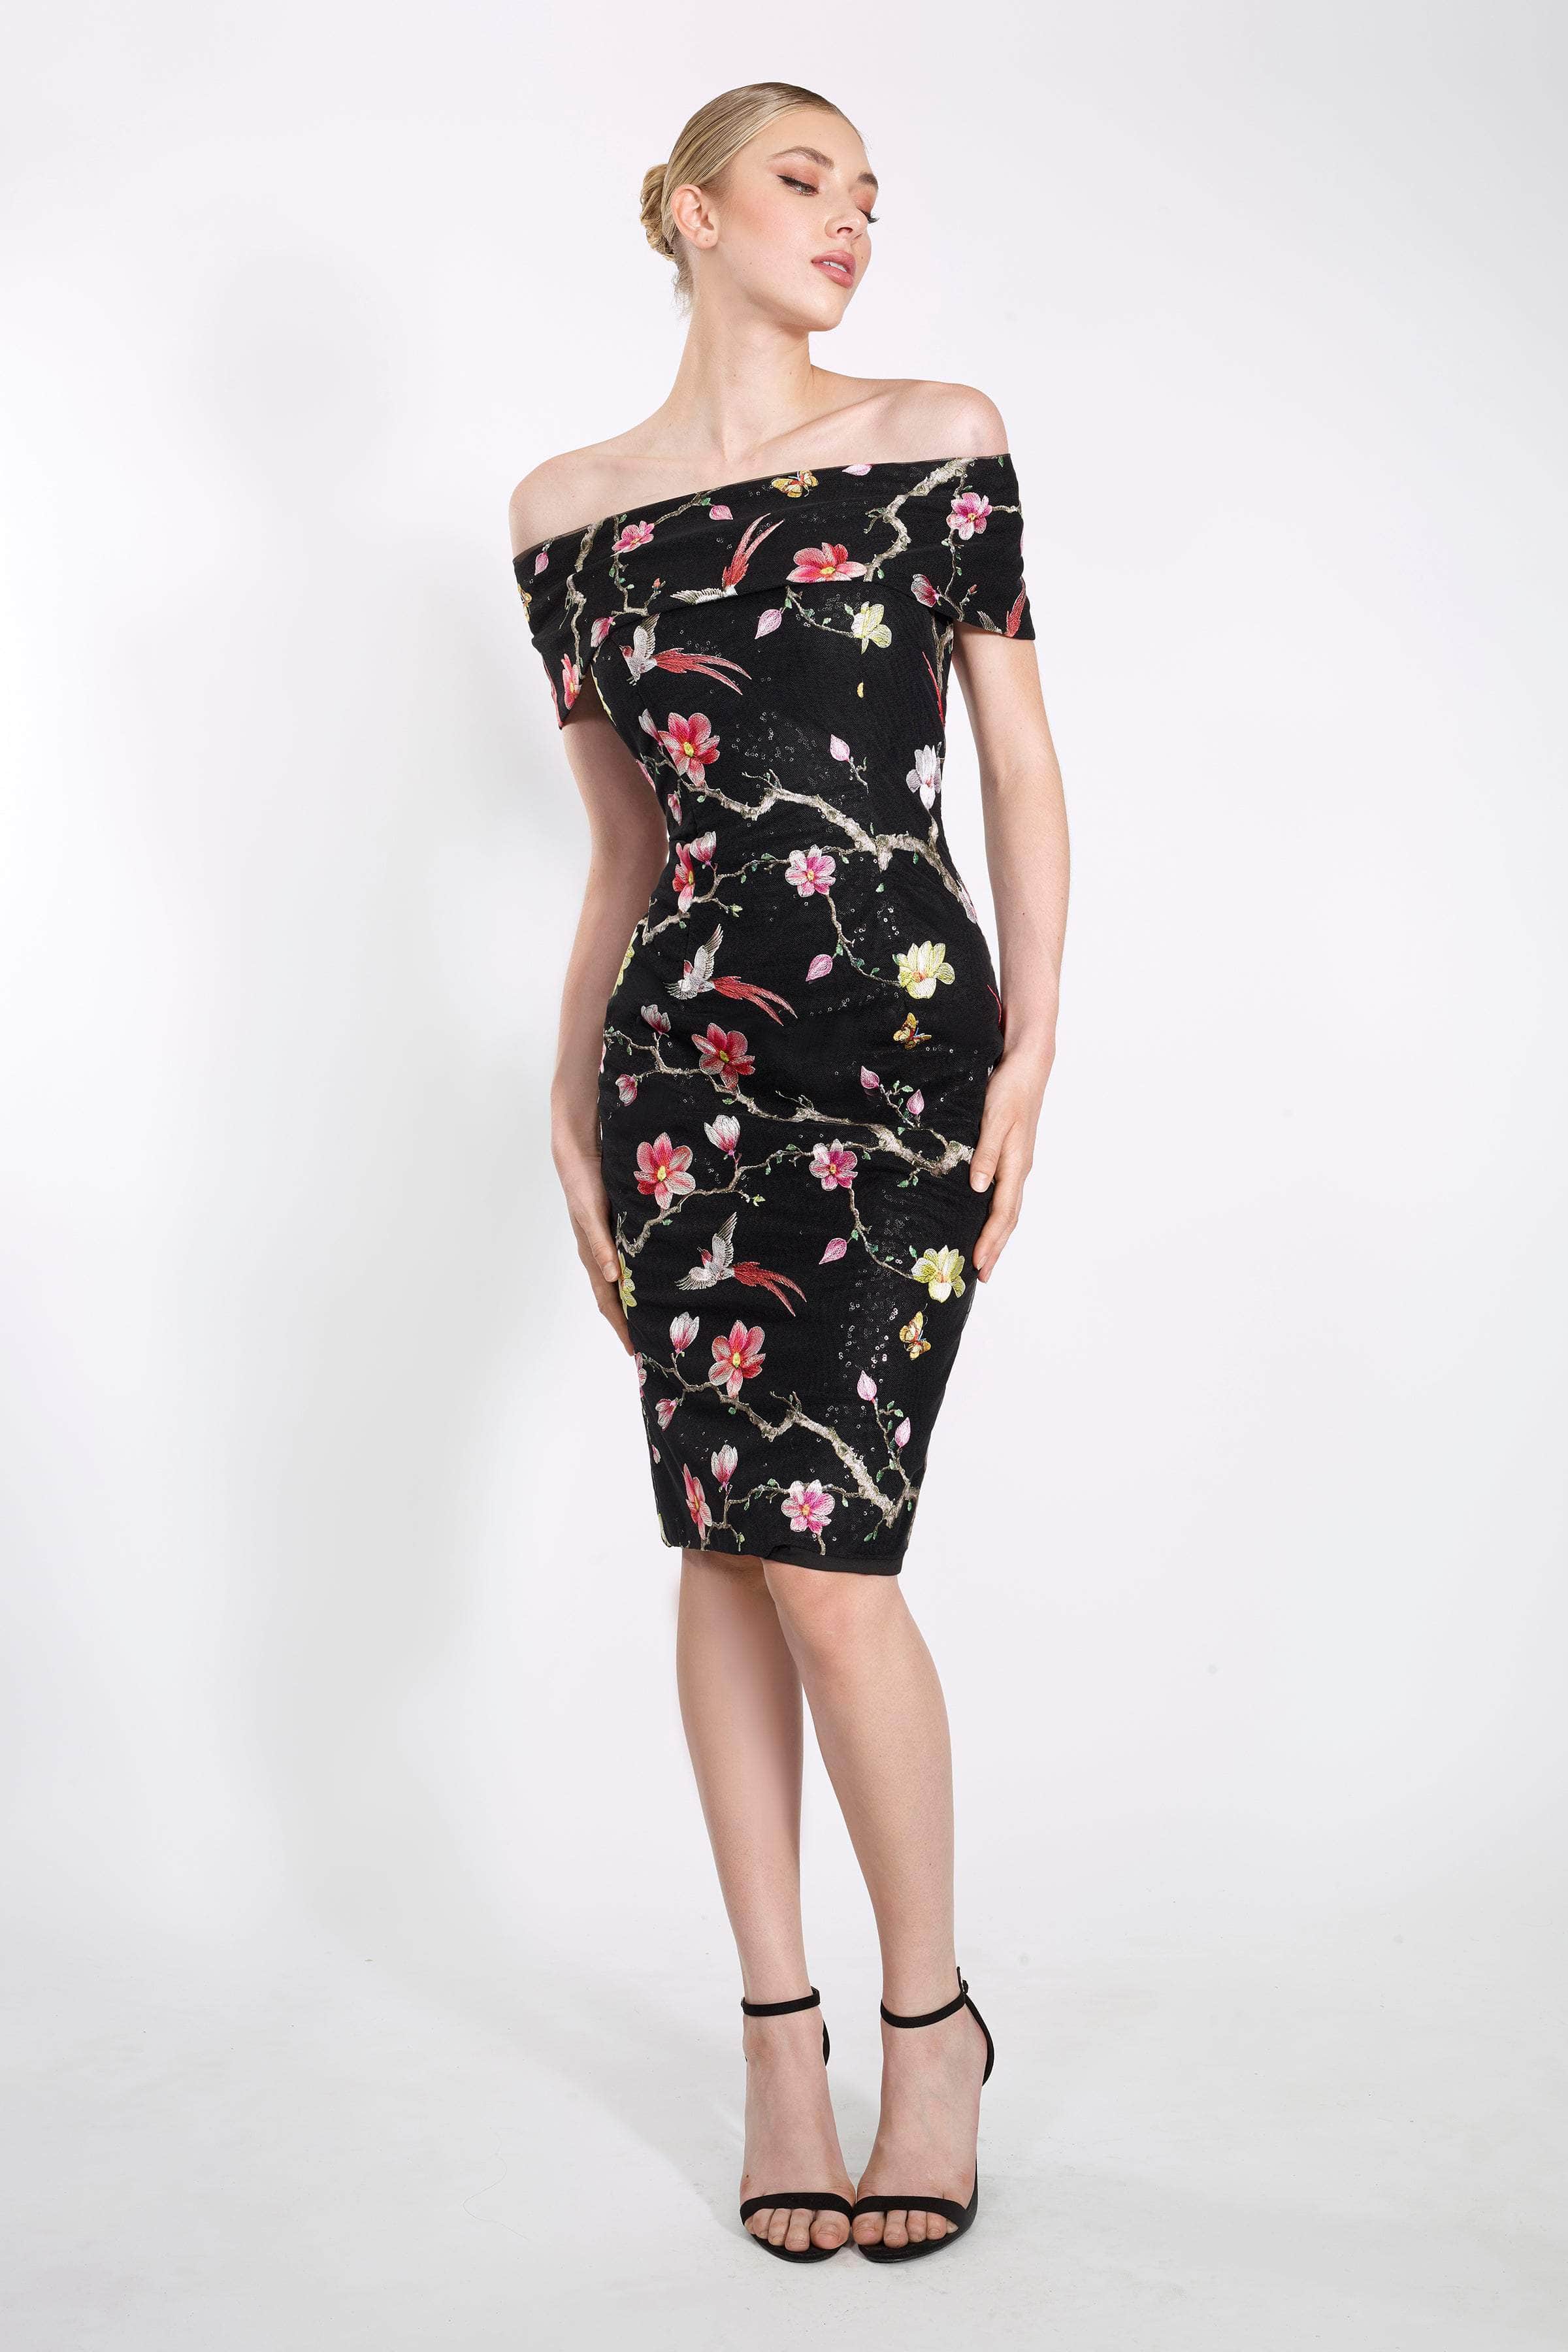 Janique - 2044 Floral Embroidered Off-Shoulder Dress
